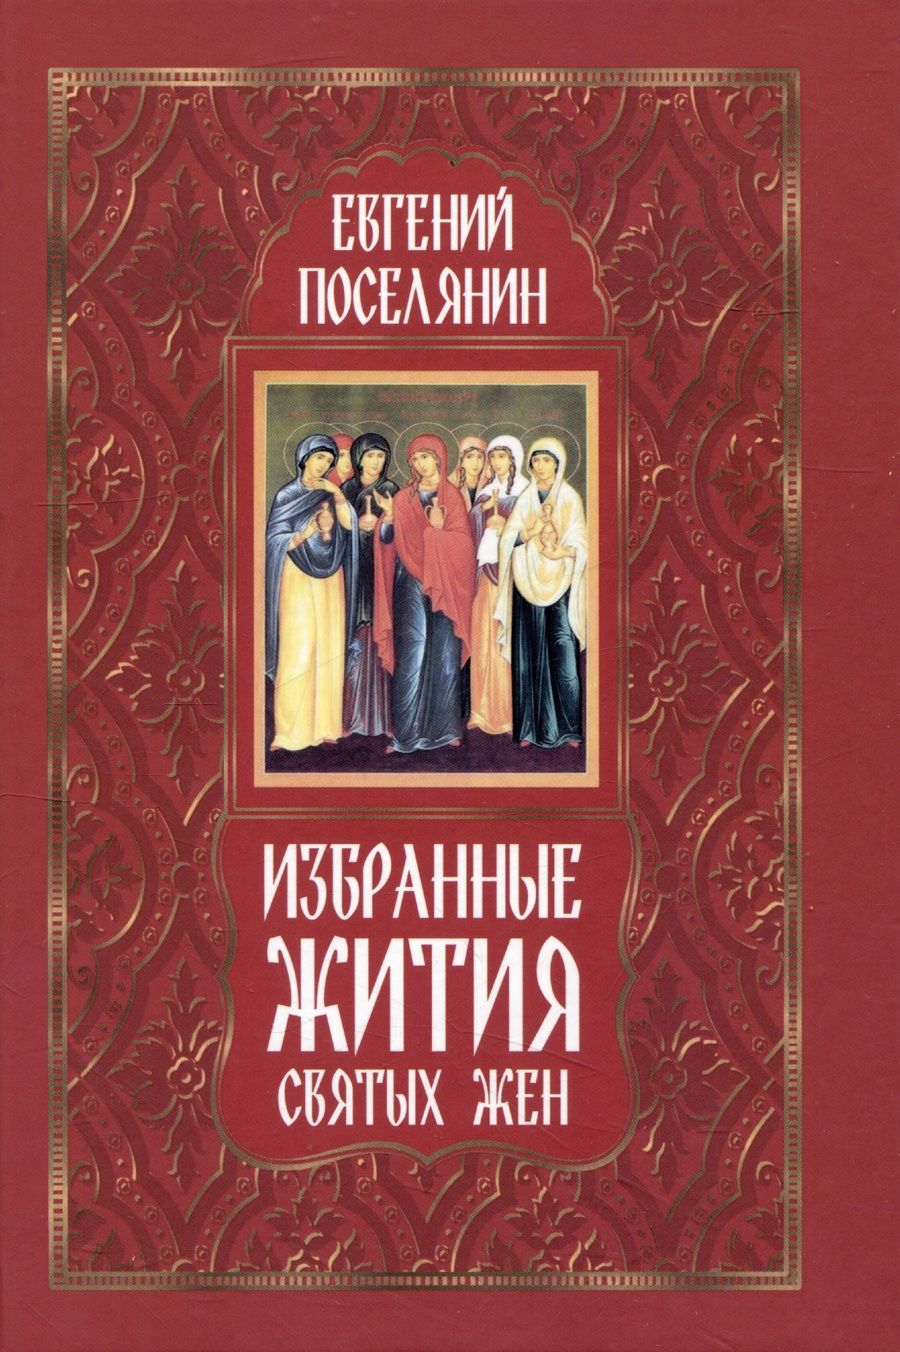 Обложка книги "Поселянин: Избранные жития святых жен"